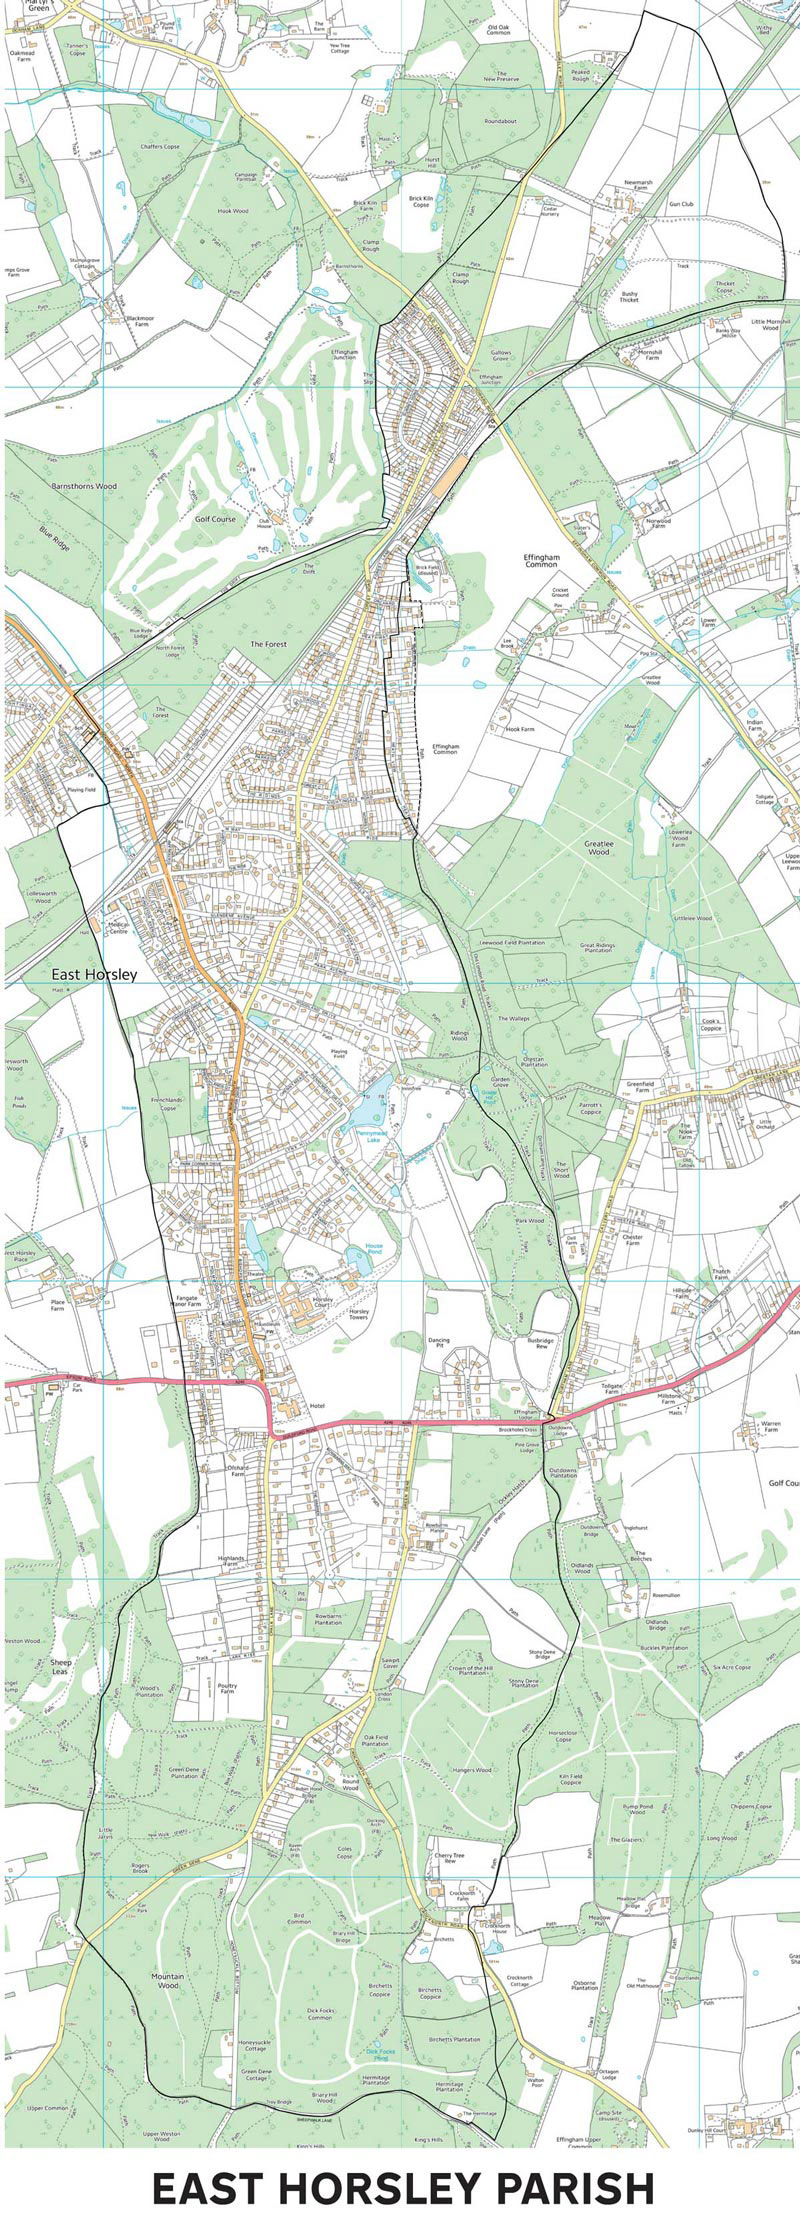 East Horsley Parish Boundary Map